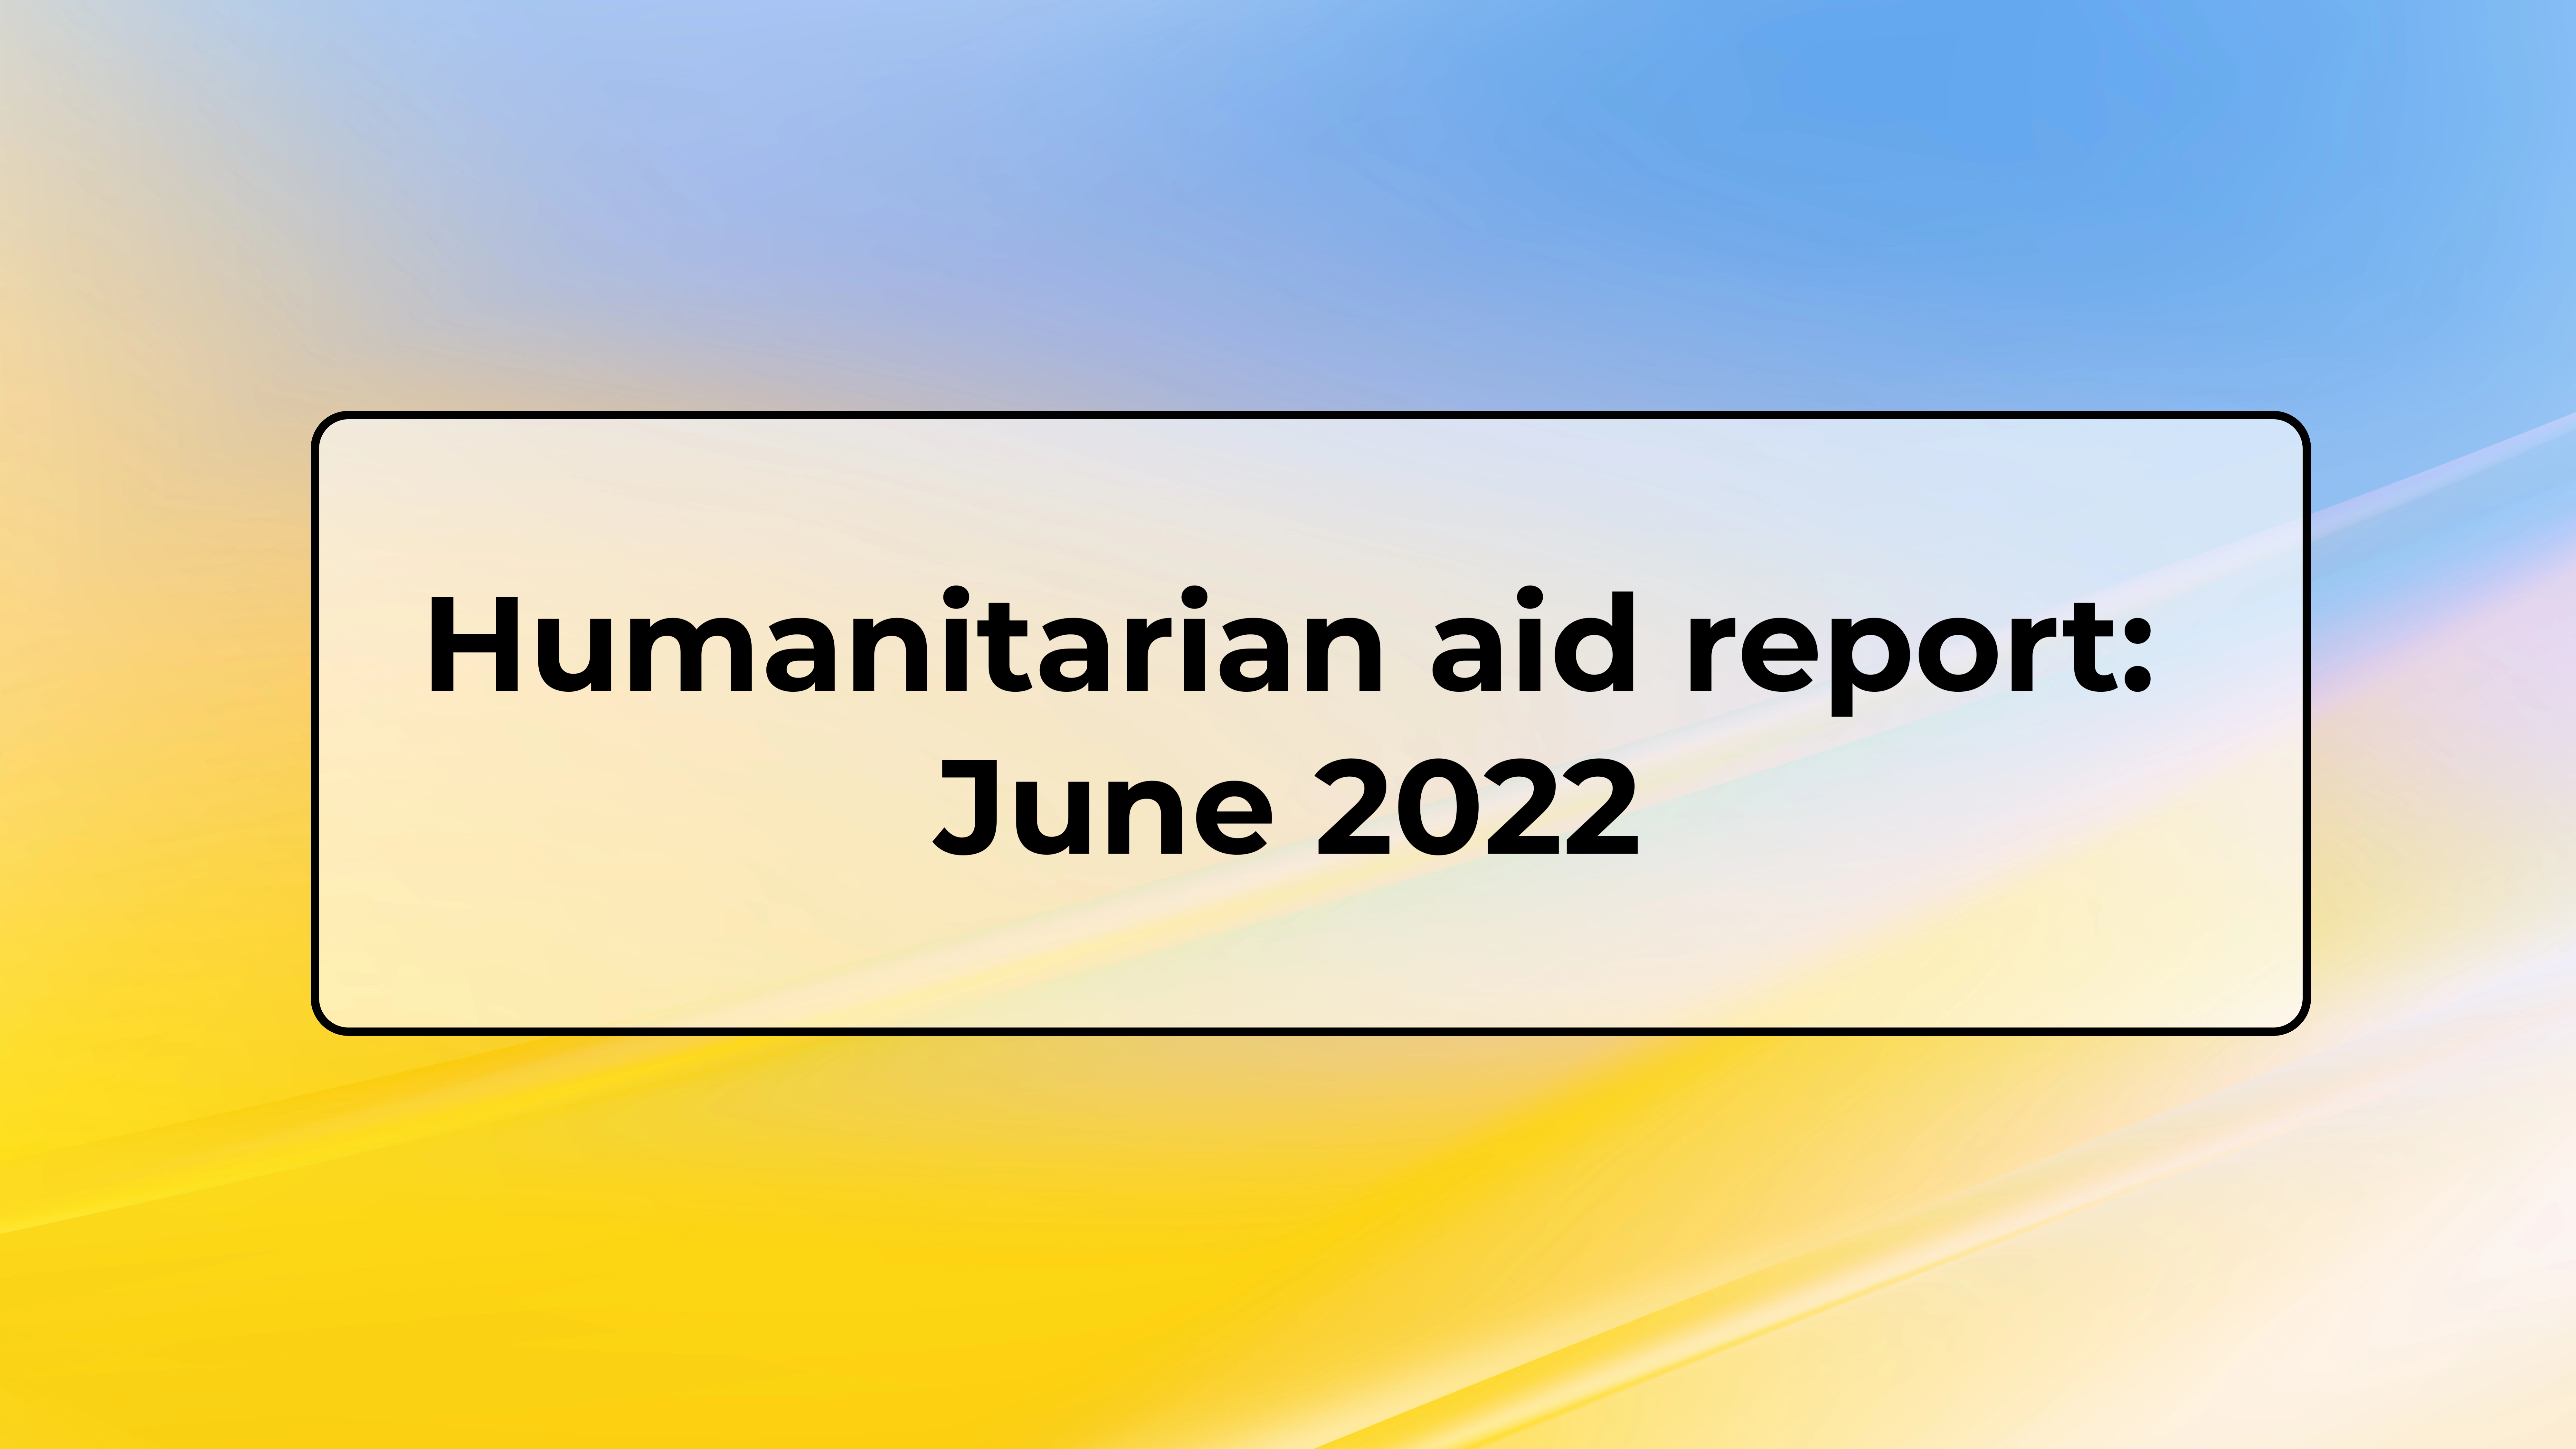 Humanitarian aid report June